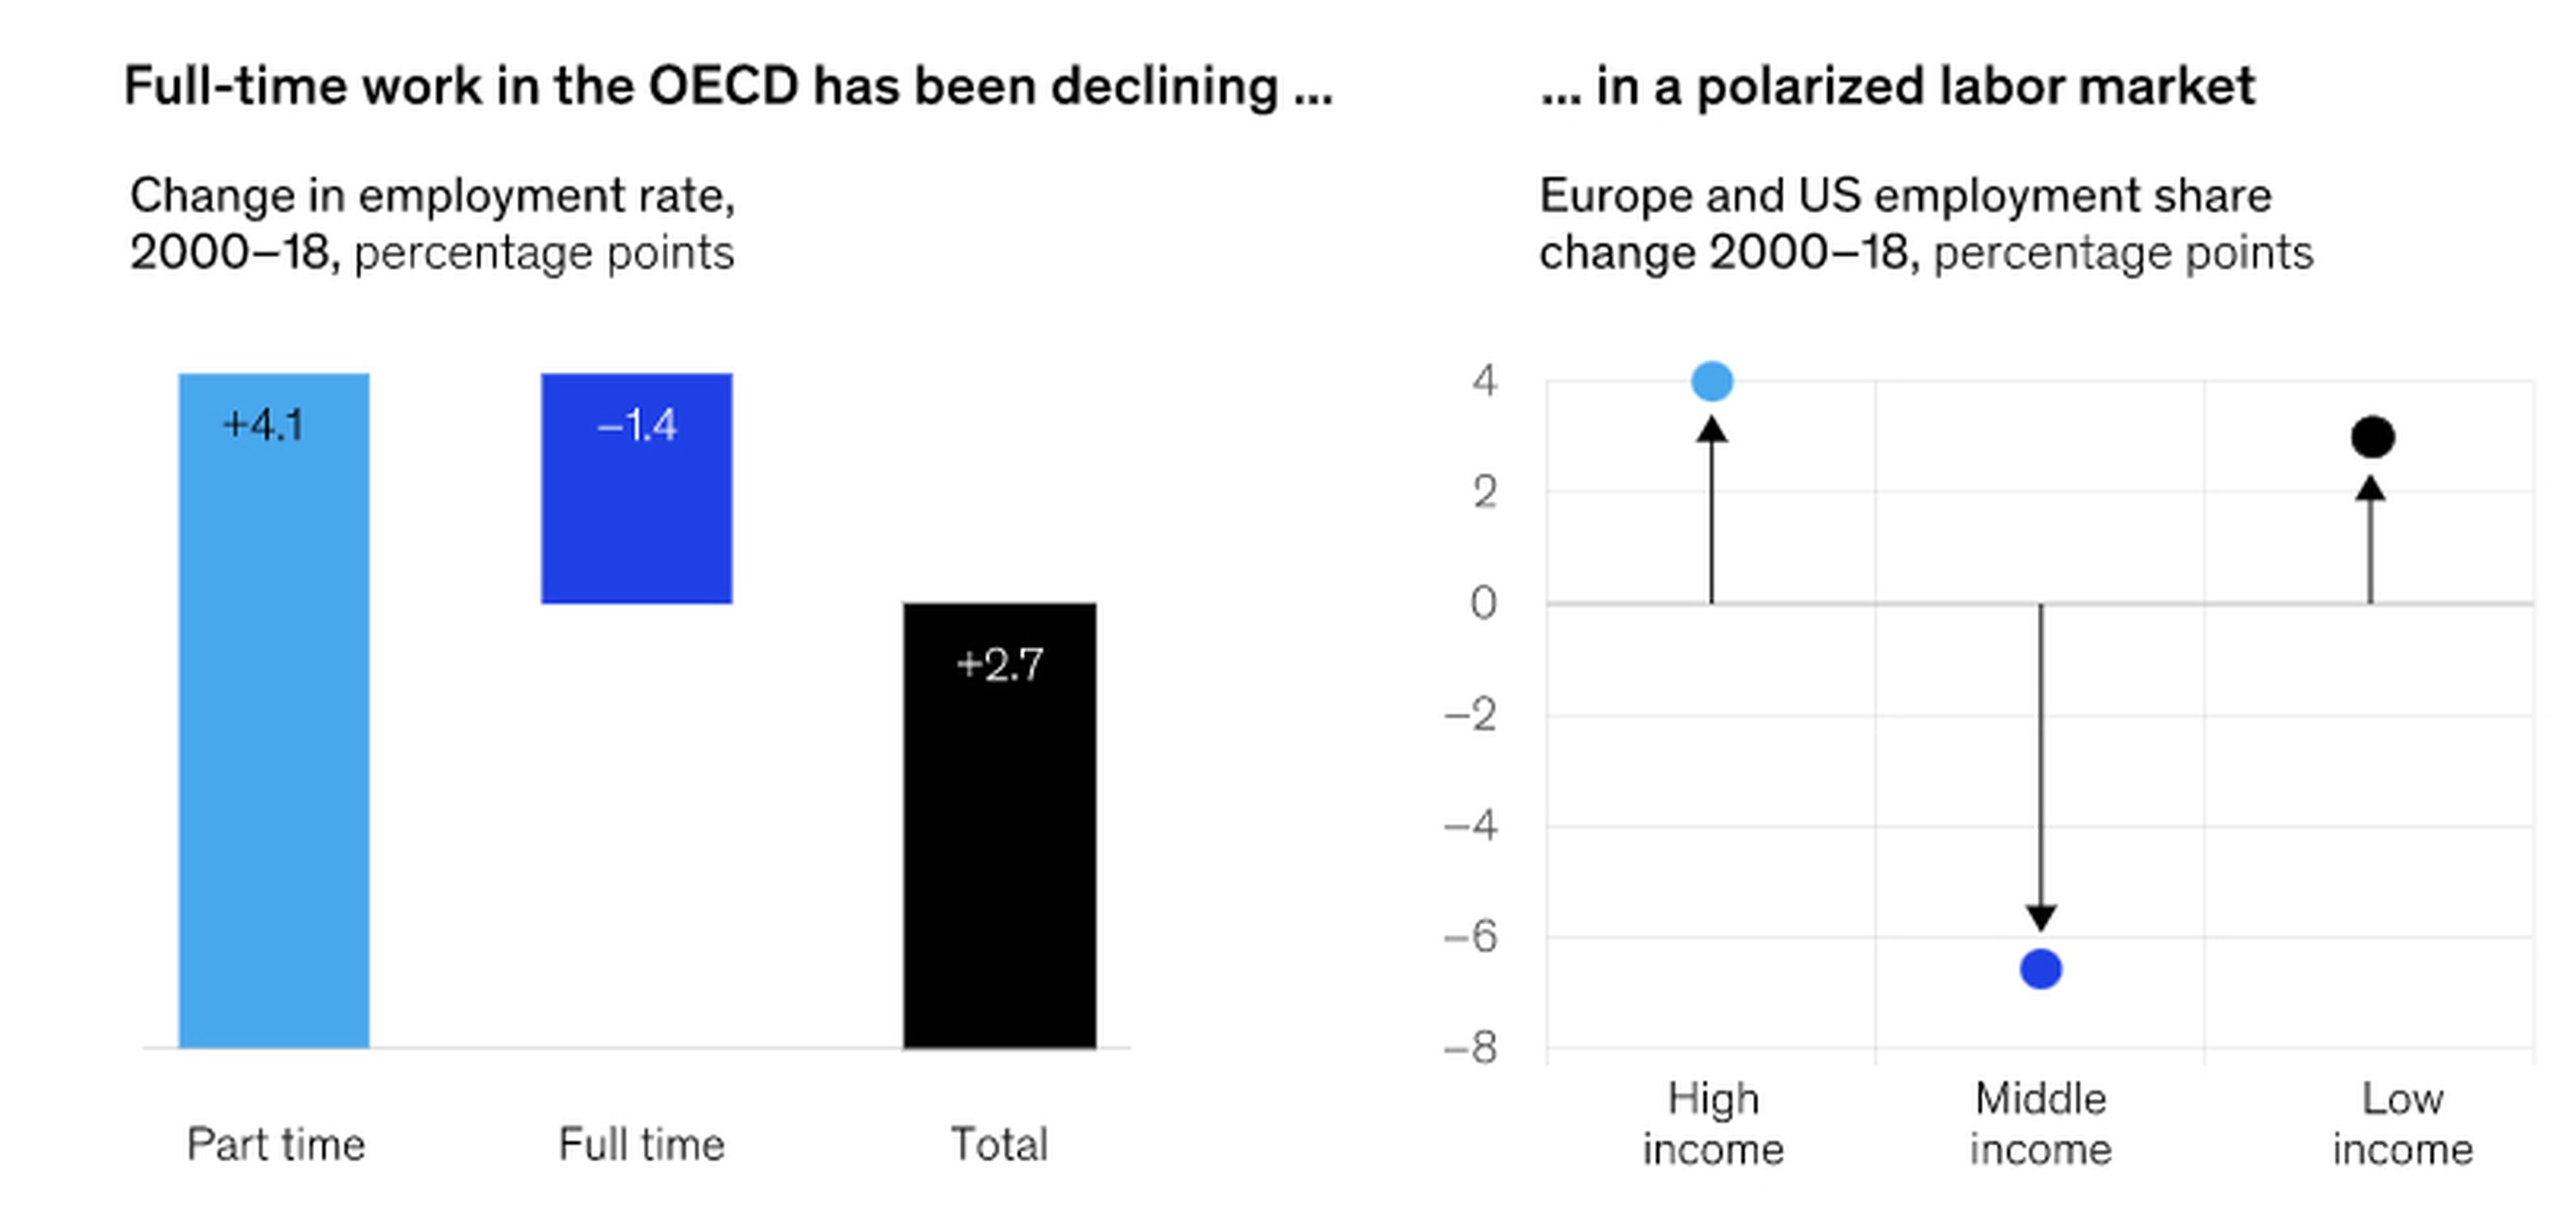 El empleo a tiempo completo y los salarios intermedios se han reducido en la OCDE entre 200 y 2018